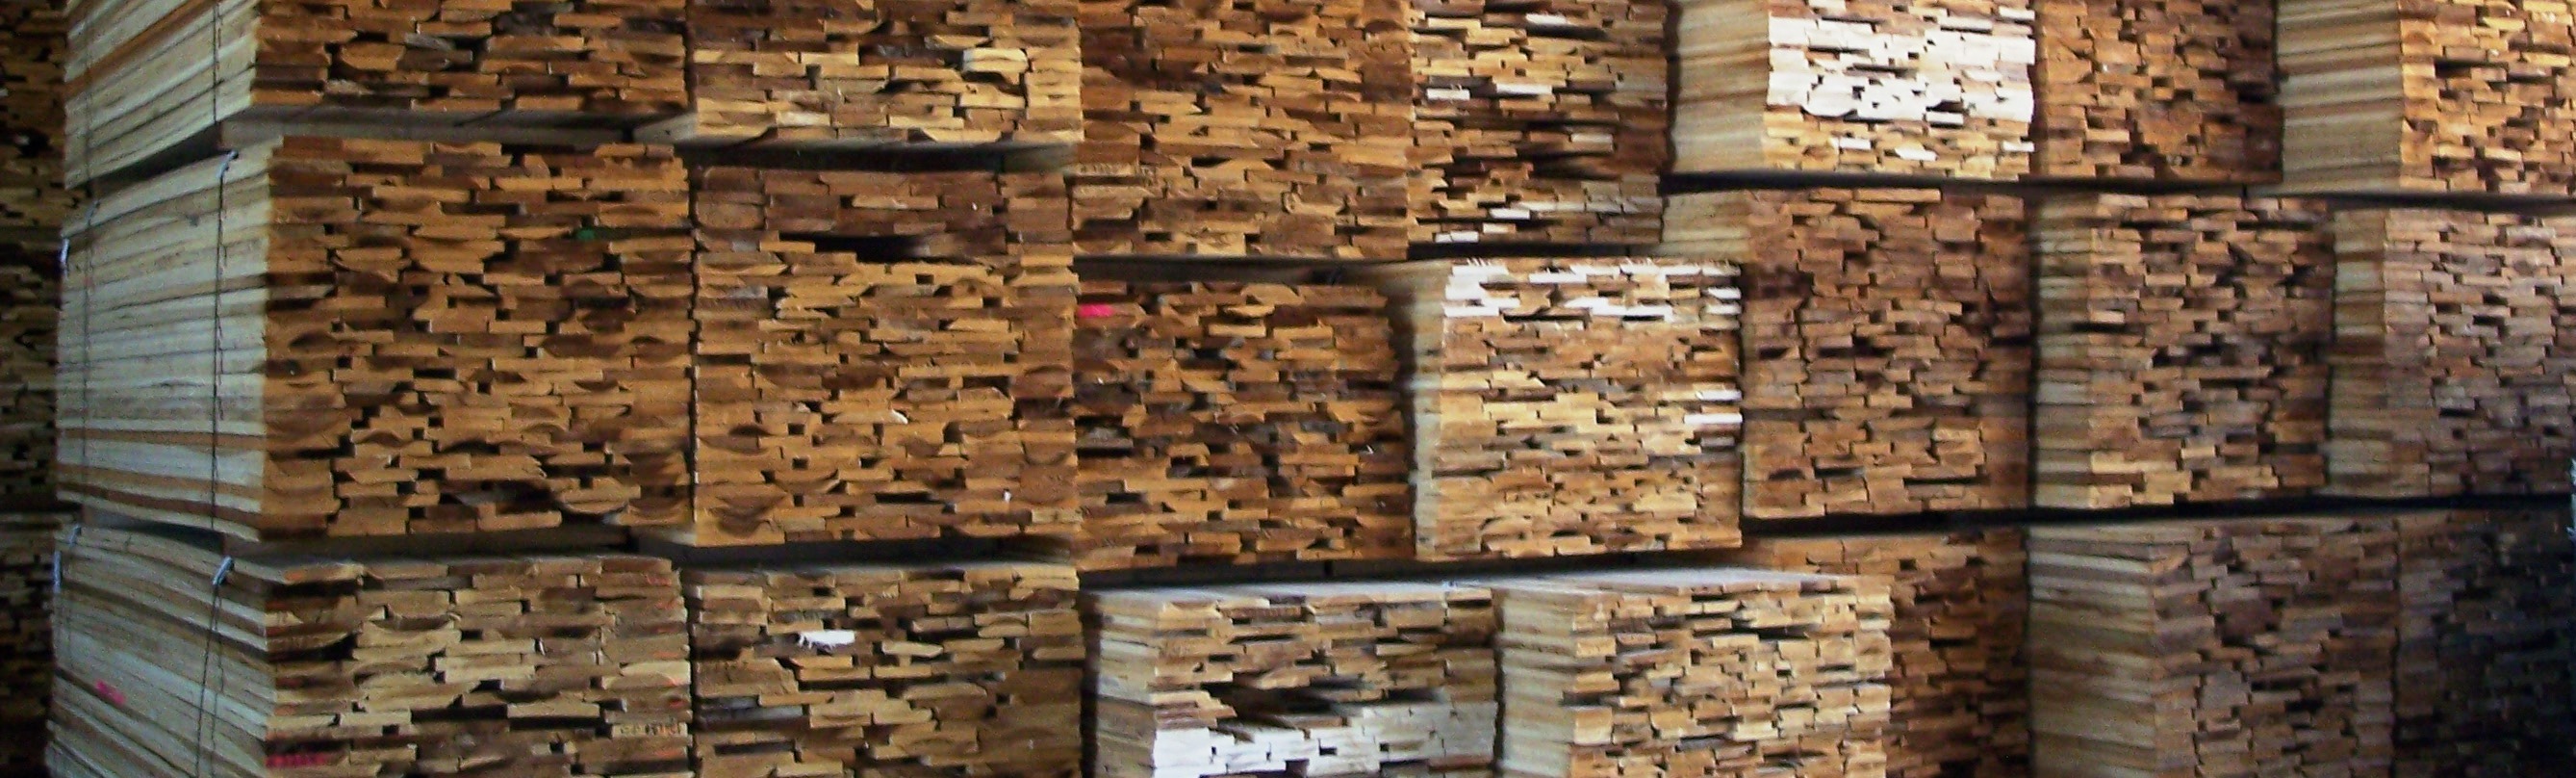 stacks of sawn timber